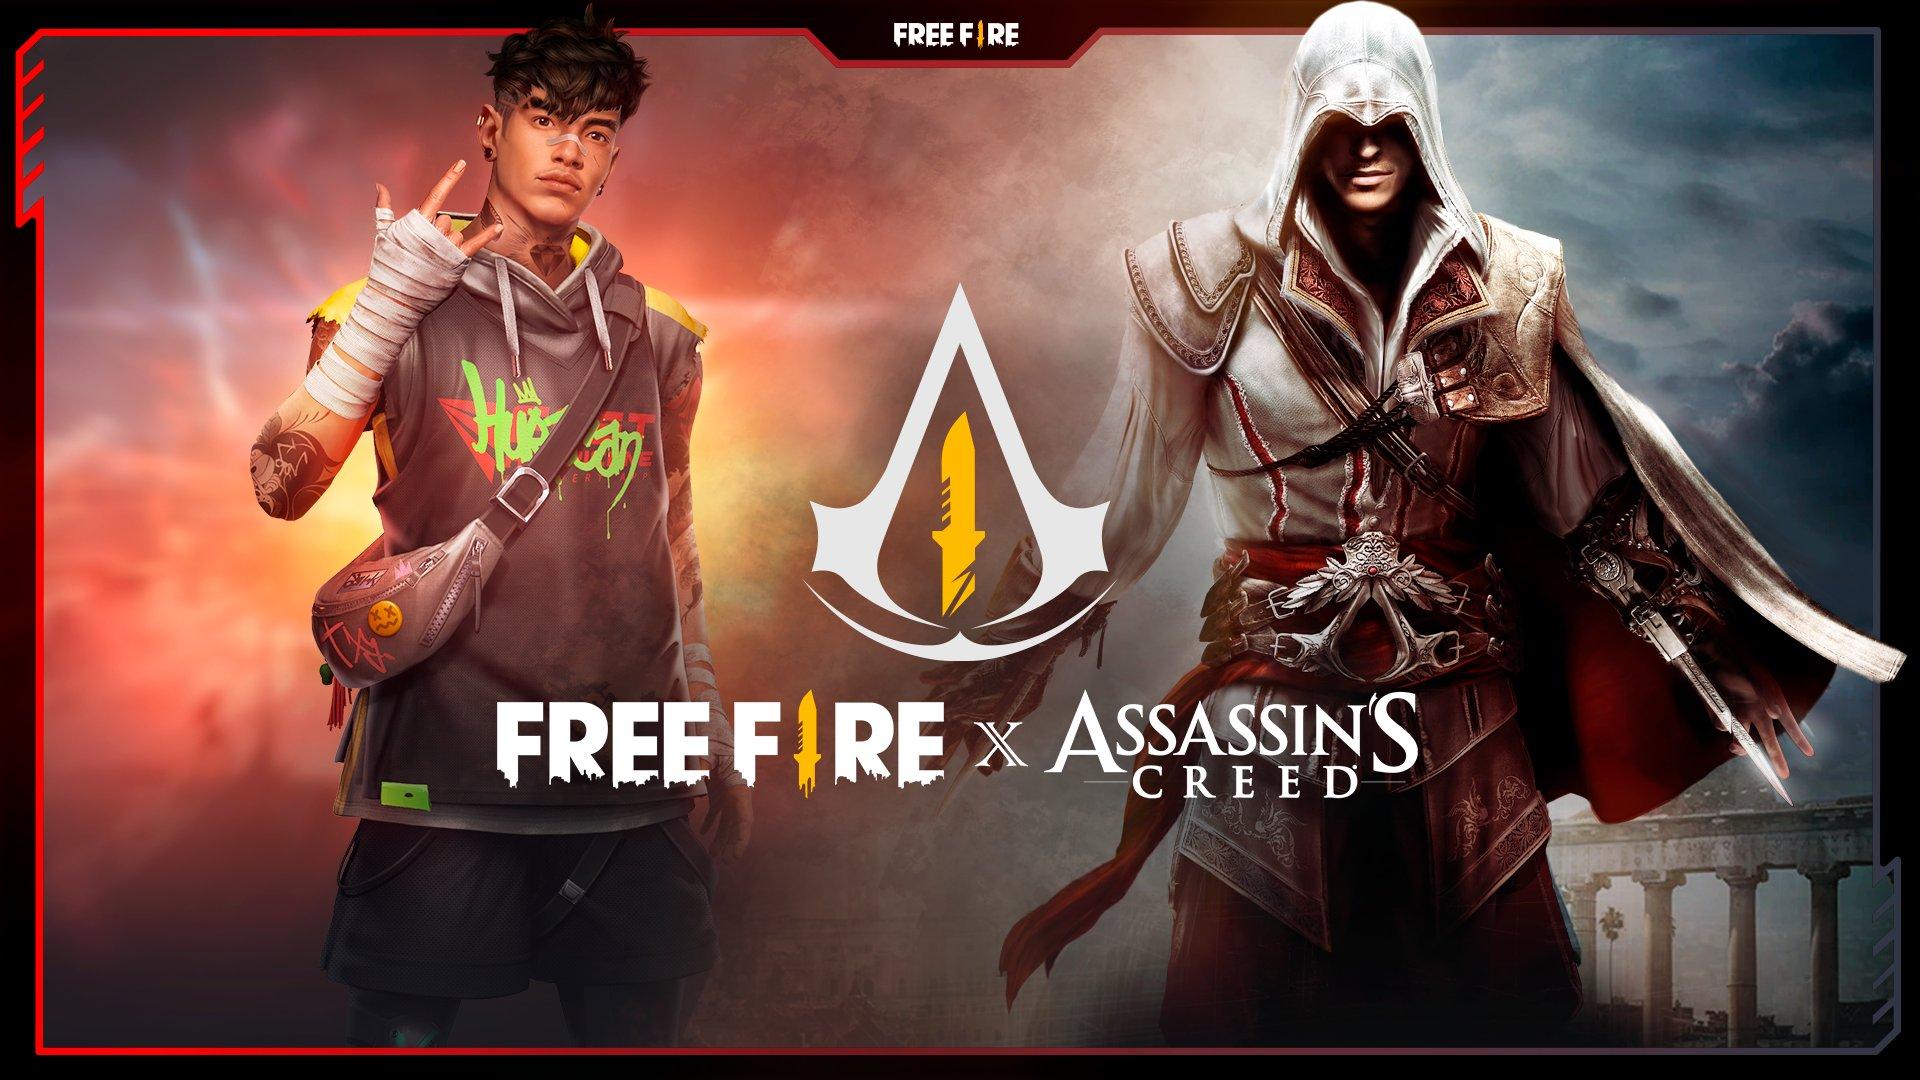 Free Fire x Assassin's Creed parceria: tudo que você precisa saber